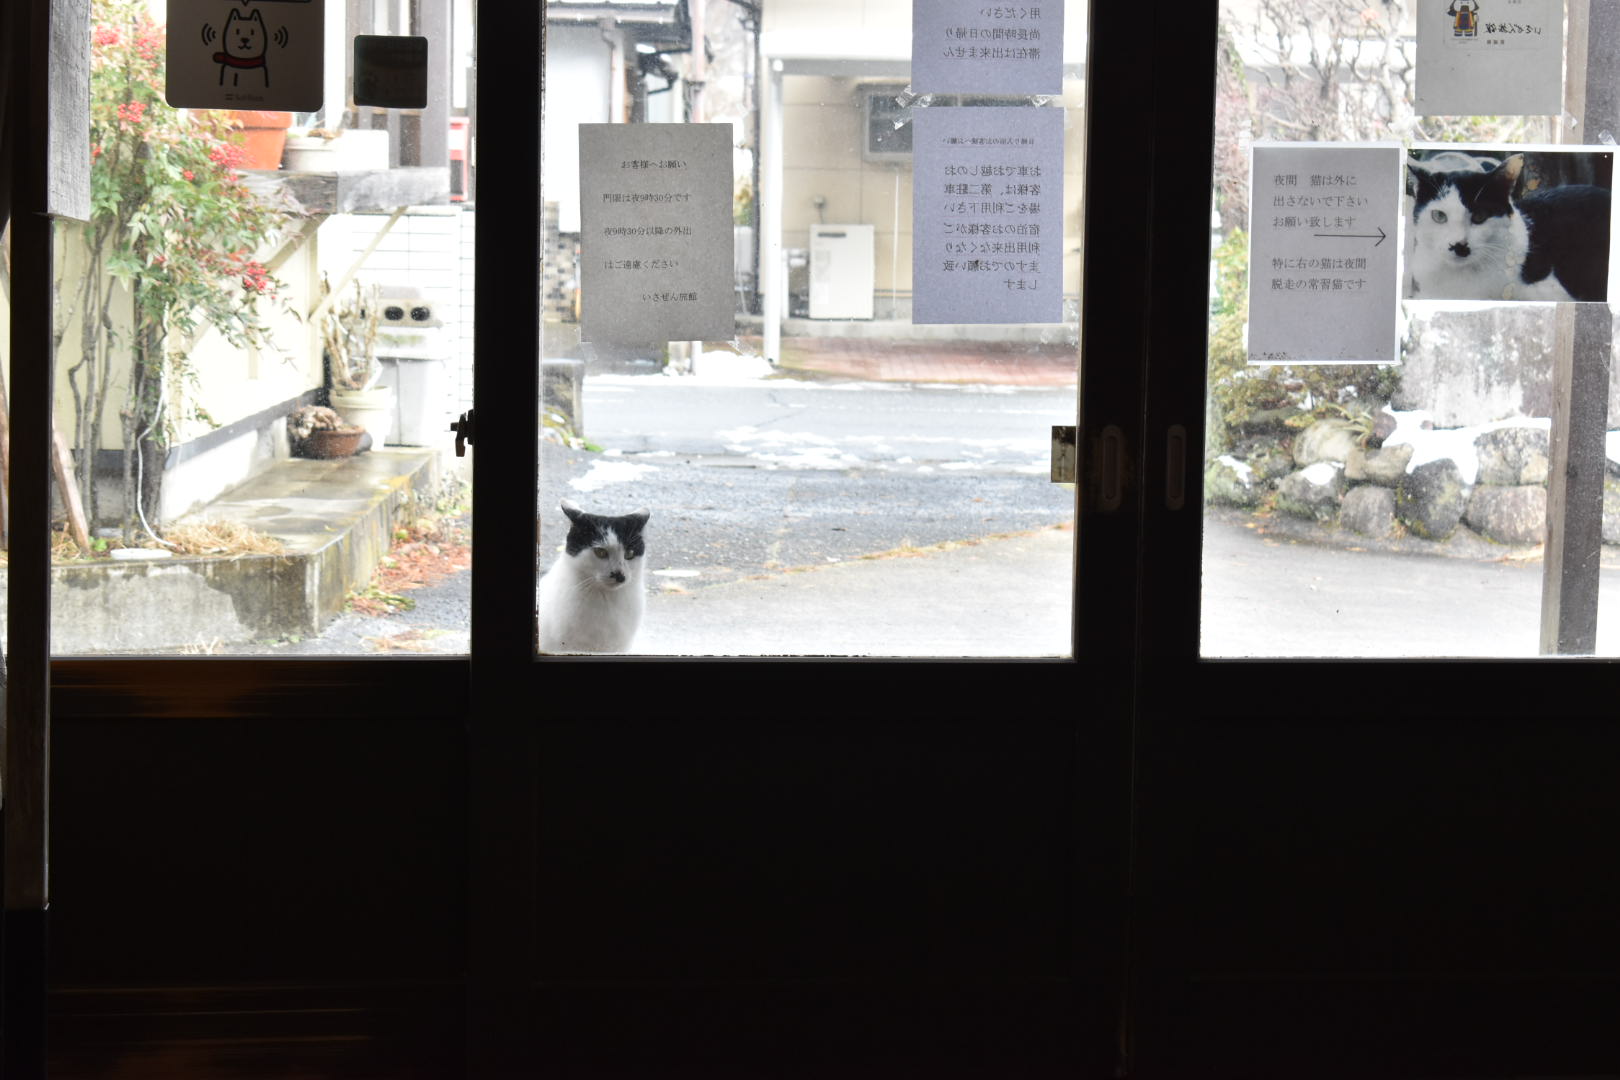 東鳴子温泉にある「いさぜん旅館」入口で見つめてくる白黒猫